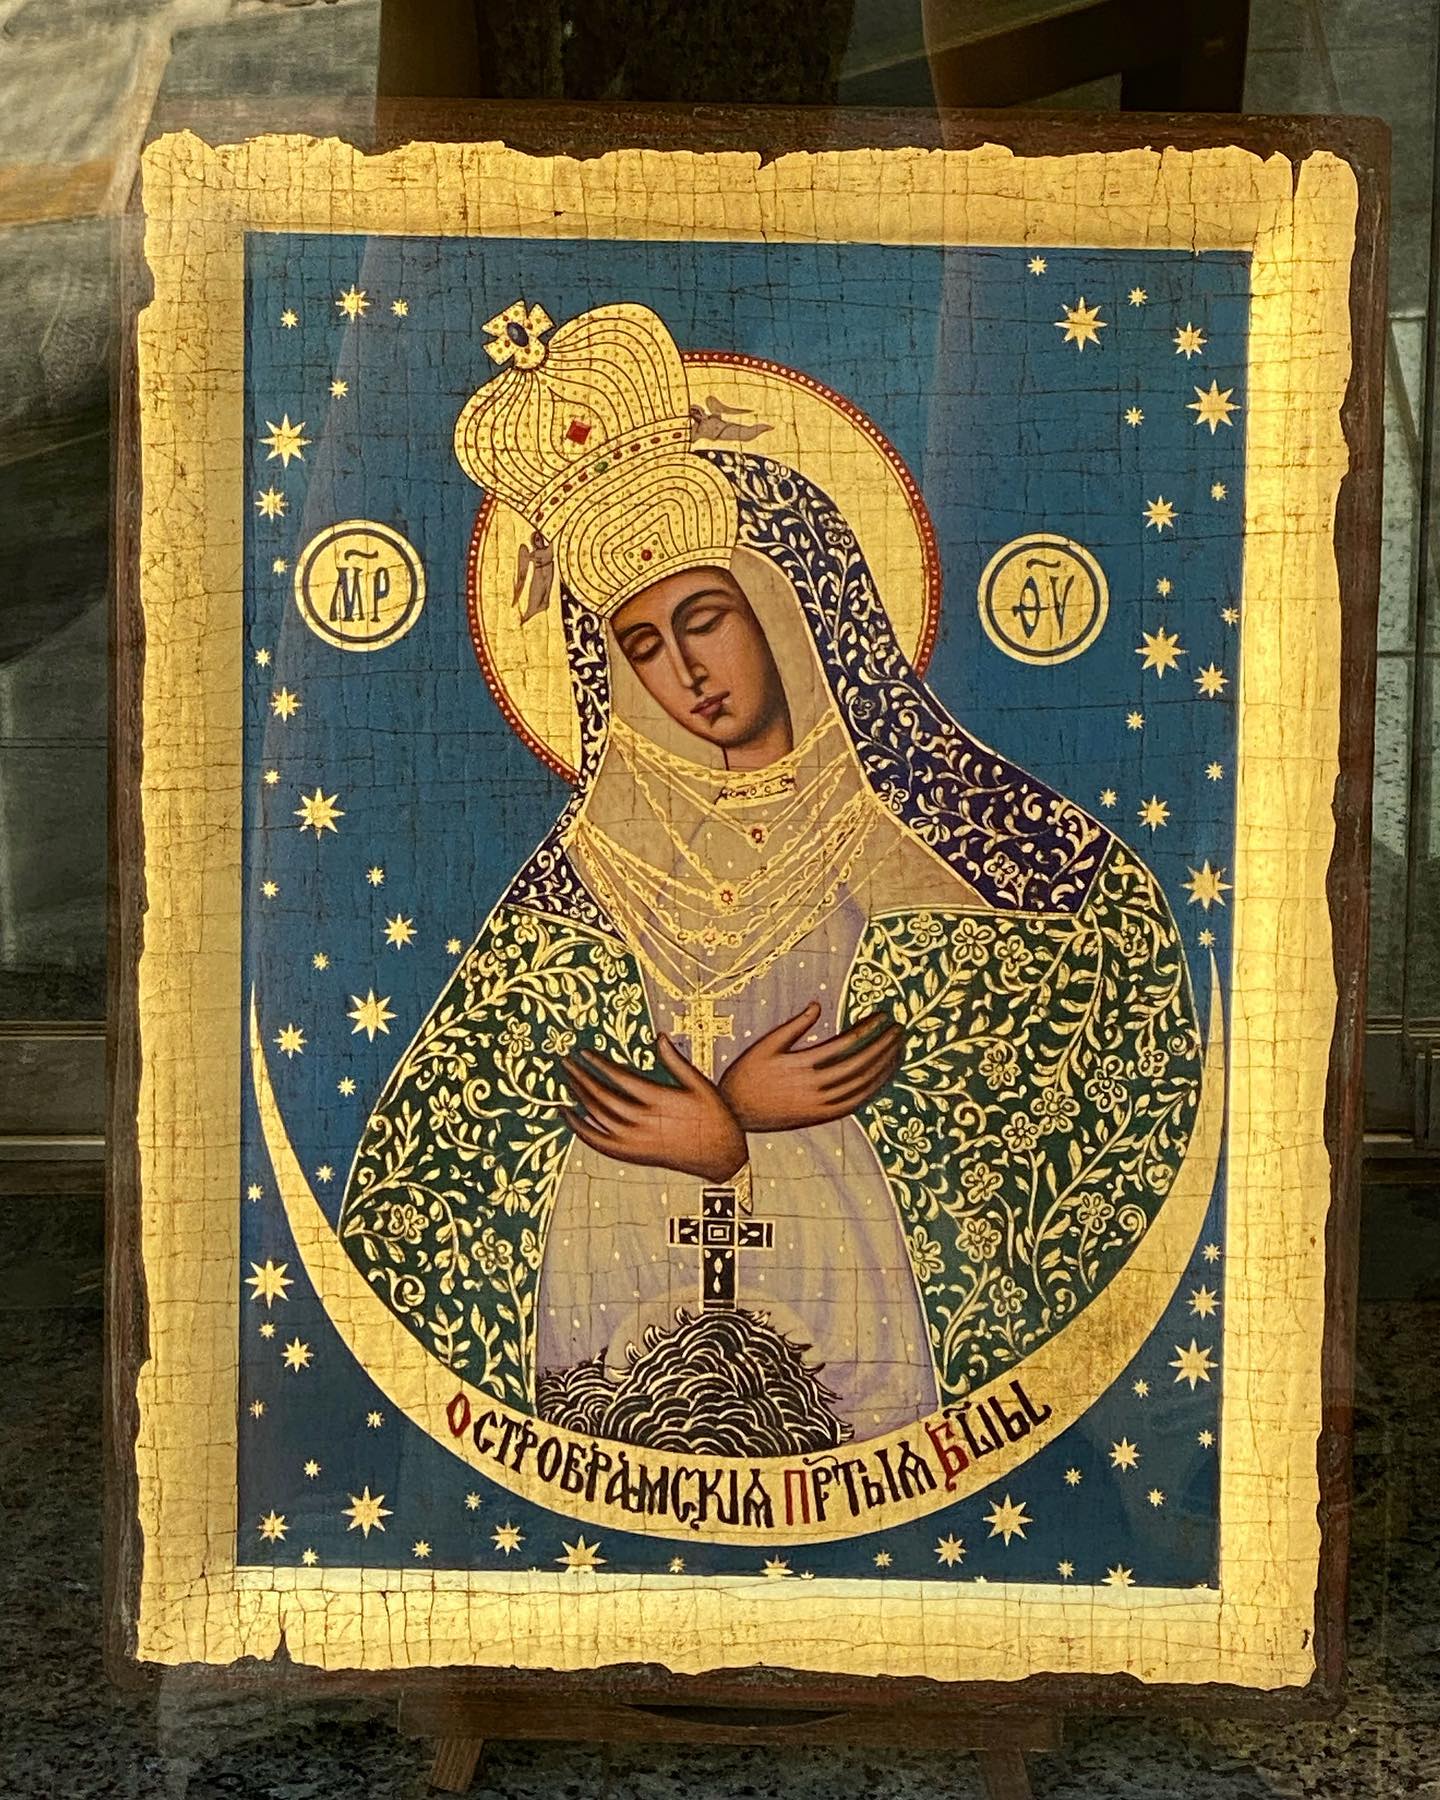 Această icoană ne-a oprit din drum azi, intr-o vitrină din Santorini. Mi-a atras atenția instant, a trebuit neaparat să intru să întreb despre ea și până la urmă am și cumpărat-o. Nu mai întâlnisem niciodată această reprezentare a Fecioarei, singură si sub cerul cu stele. 

Doamna din magazin mi-a spus că este “Virgin Mary of the Night”, dar de fapt e taman invers, dupa cum am documentat ulterior, este “Mother of God of the Gate of Dawn”. 

Originalul se găsește undeva lângă Vilnius (initial gasisem langa Minsk, dar am săpat mai mult) și e considerată importantă atât pentru ortodocși, cât și pentru catolici. Este parte din iconografia de Buna Vestire, fiindcă Maica Domnului apare fără prunc.

Se spune că fiecare om (credincios) are o apropiere, o conexiune cu un anumit sfânt, iar pentru mine au fost mereu Maica Domnului și Sfânta Rita ❤️

#iconography #greekorthodox #orthodoxchristianity #greece #greeceicons